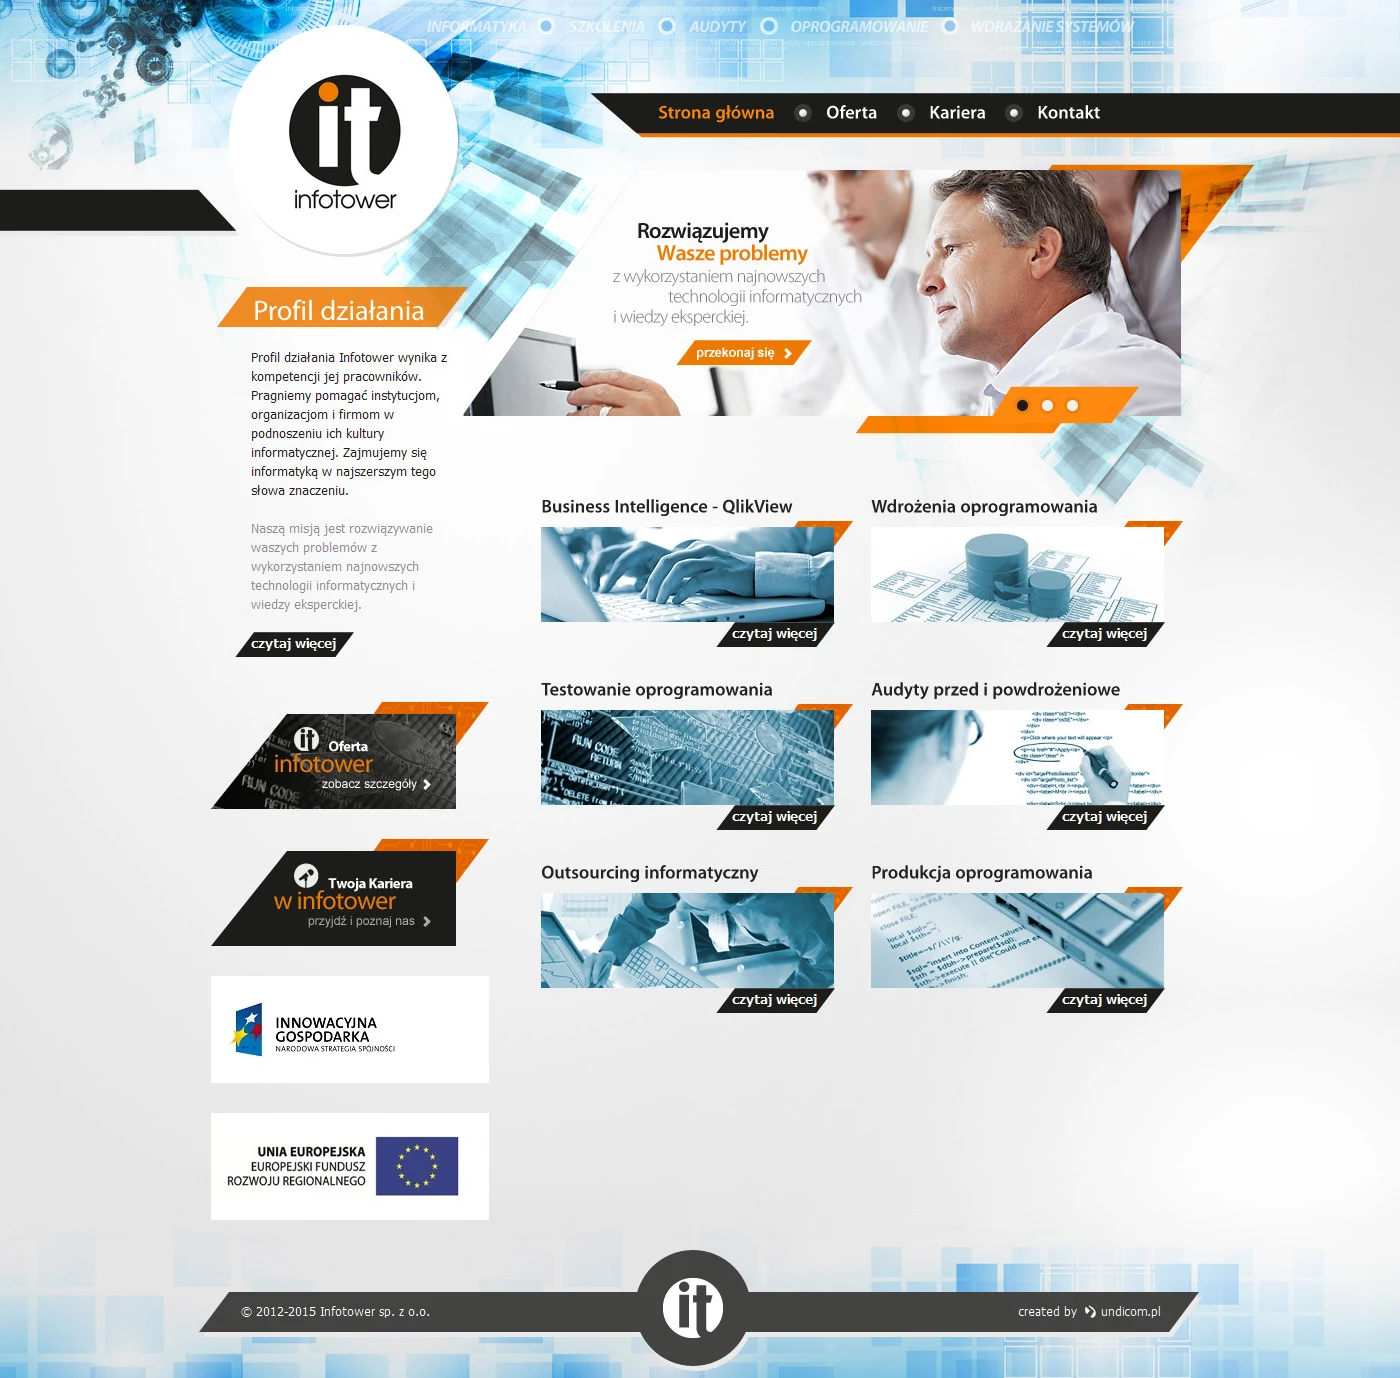 Infotower - Przemysł i technologie - Strony www - 1 projekt